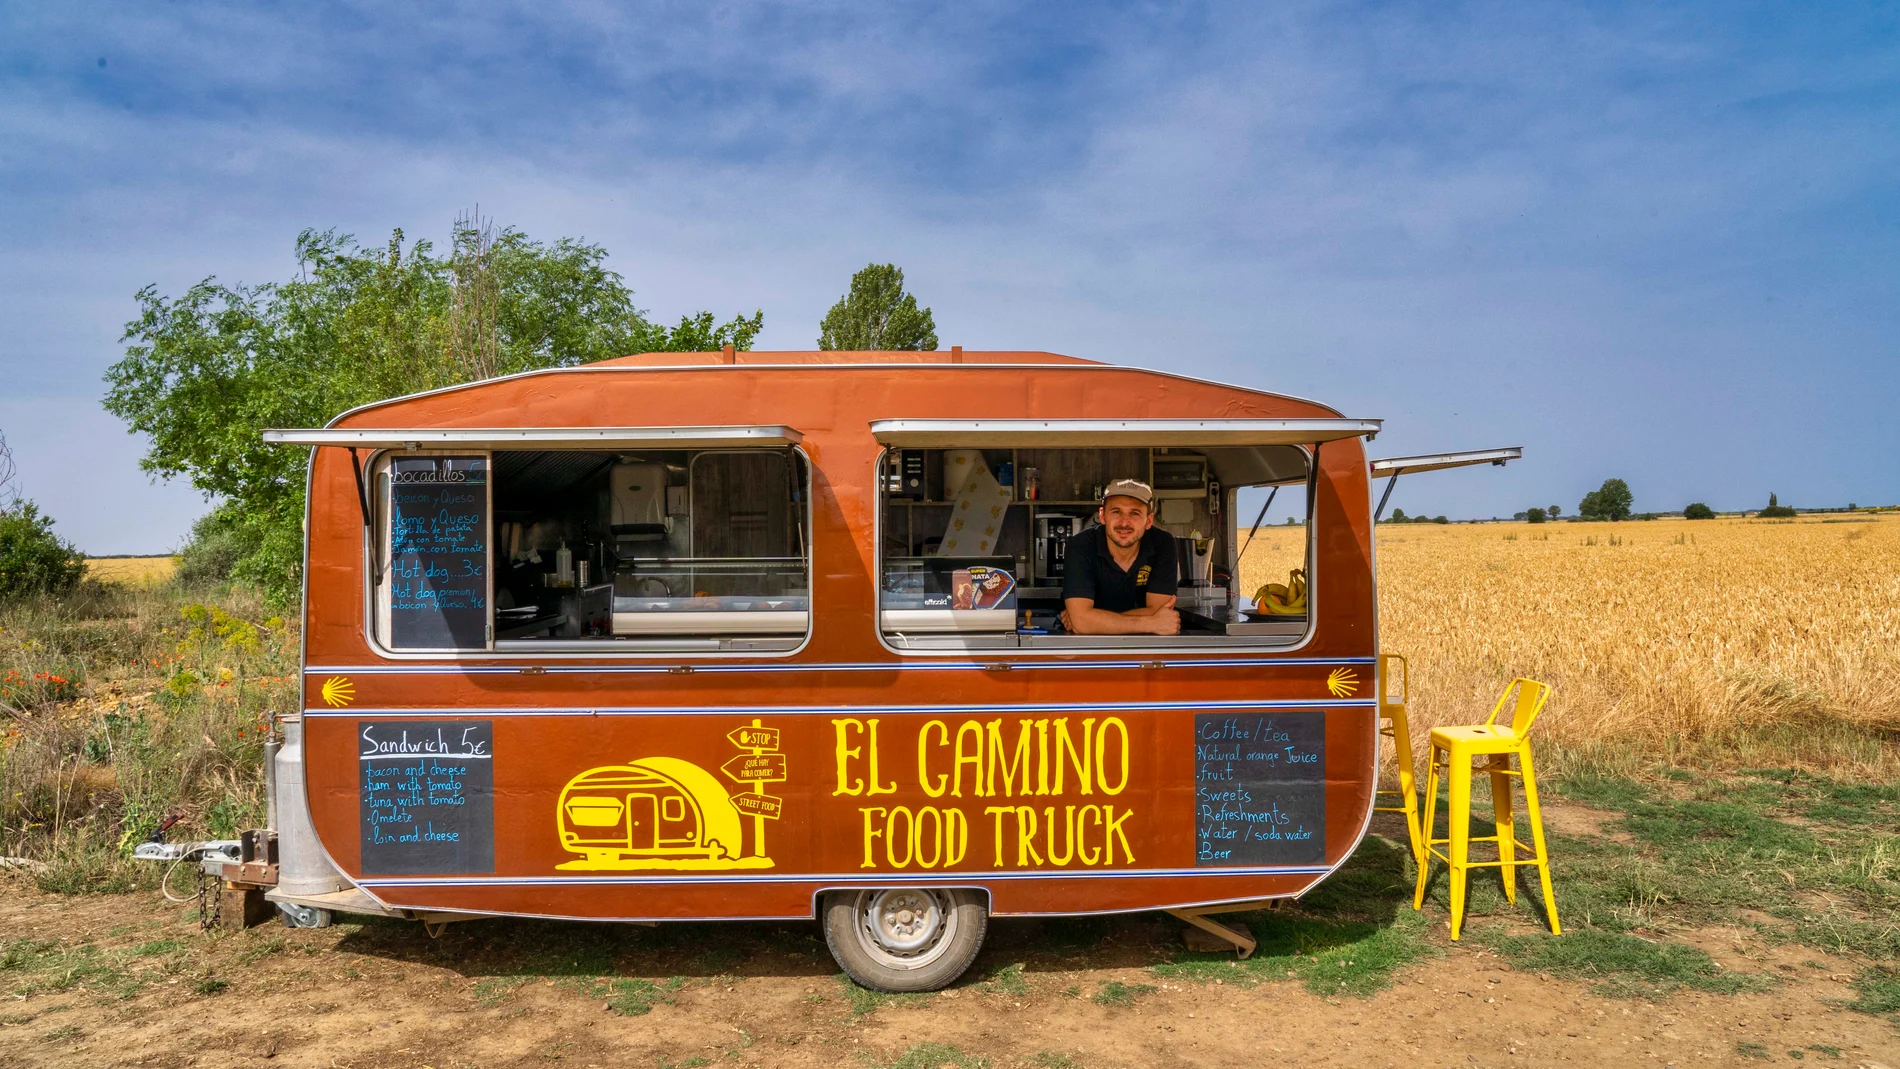 La Food Truck "El Camino", de Diego Caminero, surge de la nada como un oasis en un tramo de la ruta jacobea en pleno Camino Francés, en el tramo de la antigua Calzada Romana que transcurre entre Carrión de los Condes y Calzadilla de la Cueza